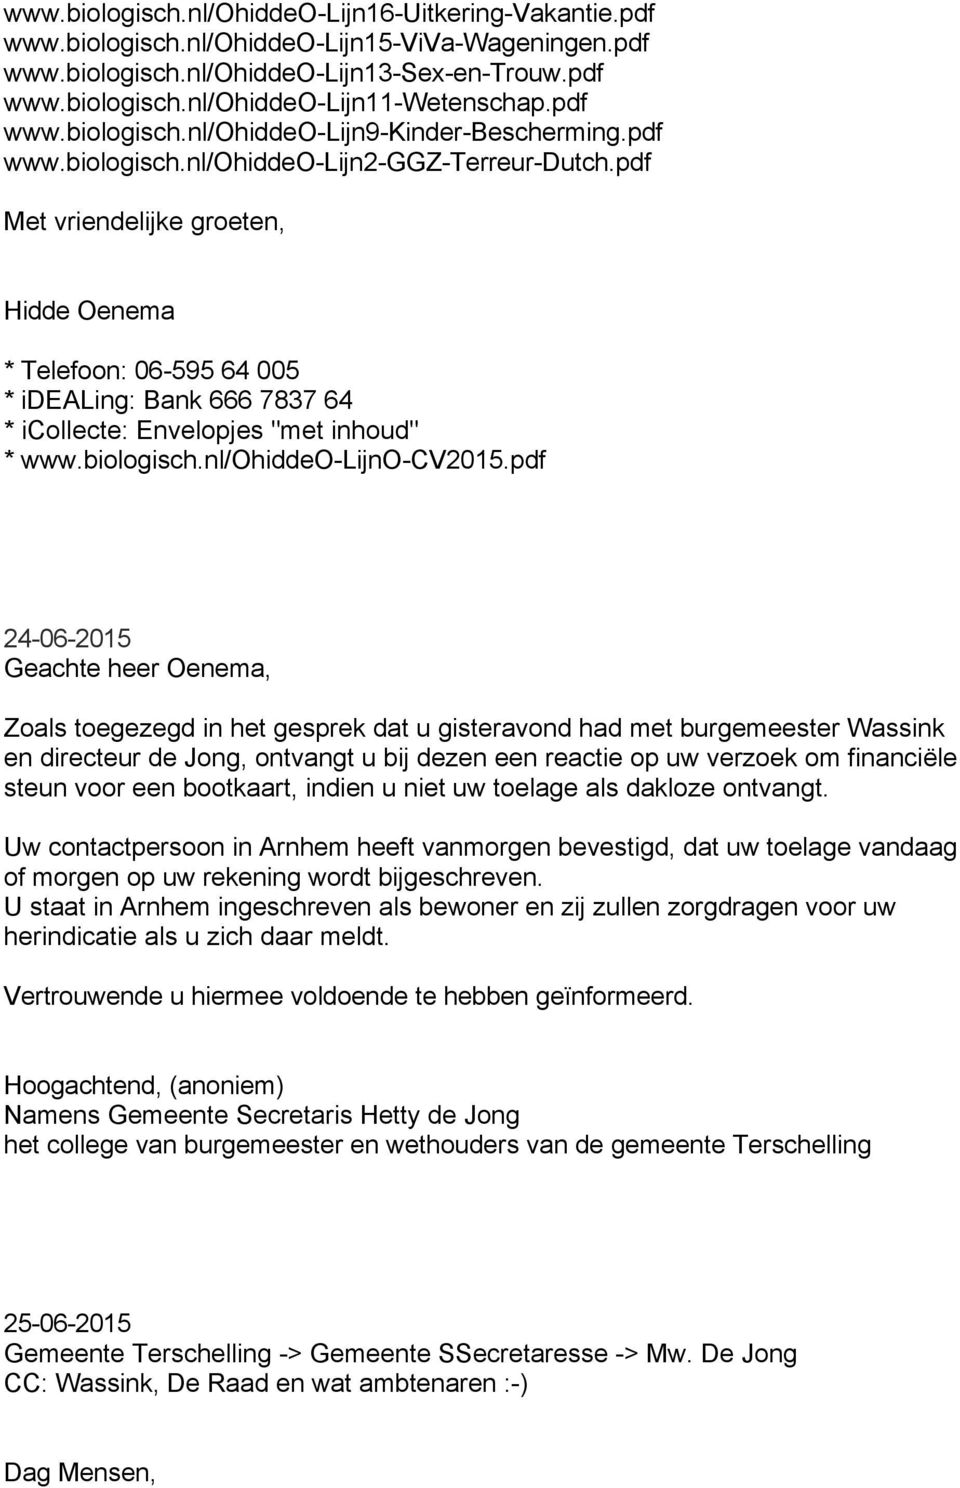 pdf Met vriendelijke groeten, Hidde Oenema * Telefoon: 06-595 64 005 * idealing: Bank 666 7837 64 * icollecte: Envelopjes "met inhoud" * www.biologisch.nl/ohiddeo-lijno-cv2015.